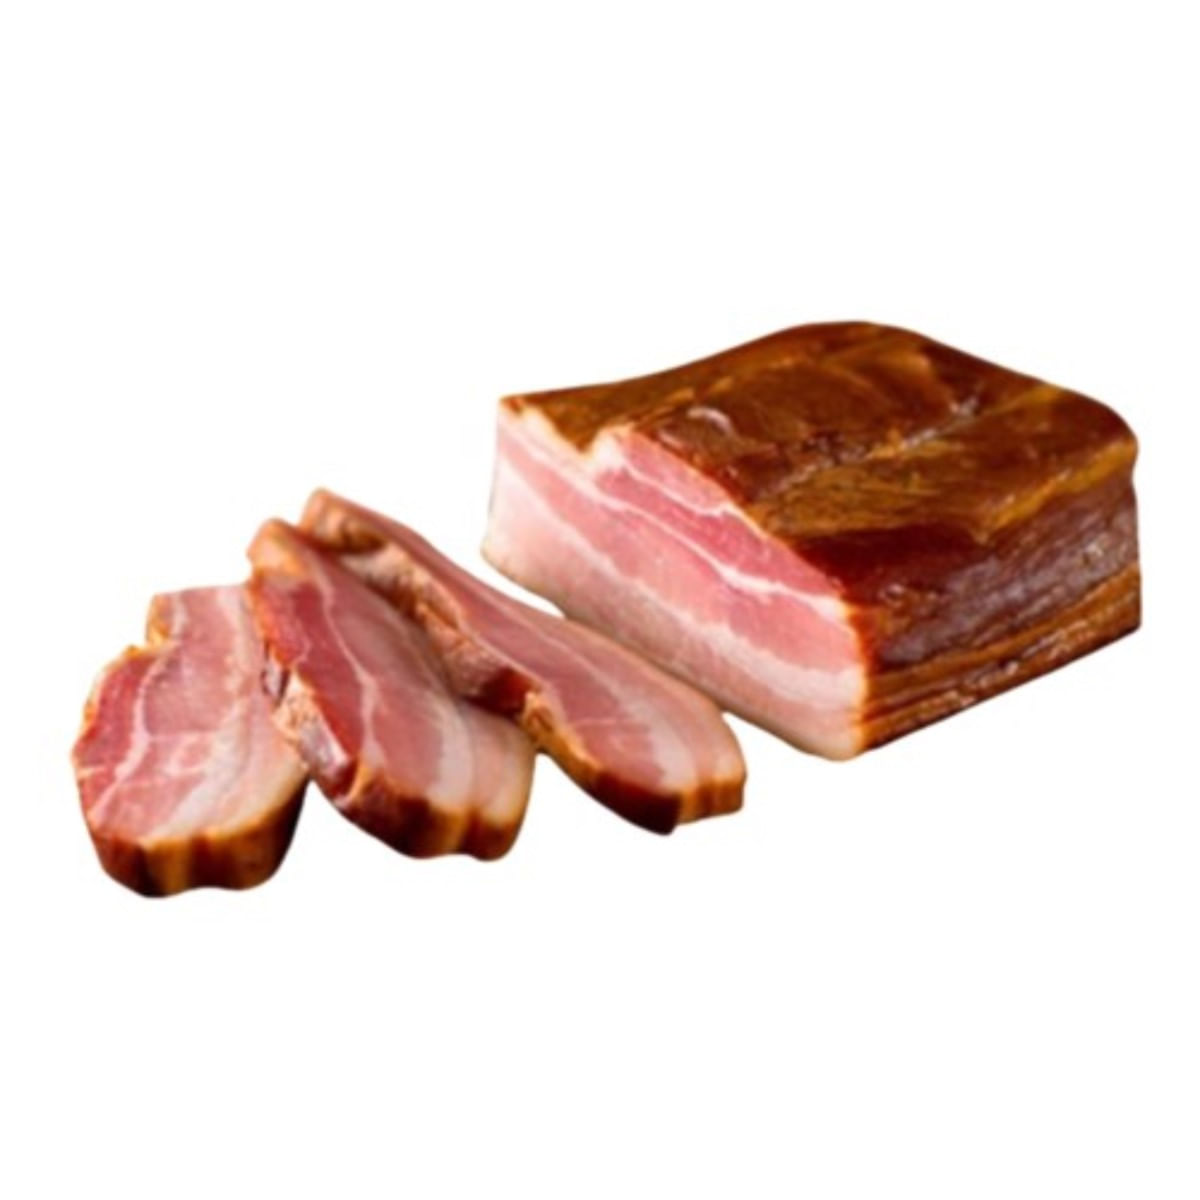 bacon-def-frigosantos-cray-kg-1.jpg